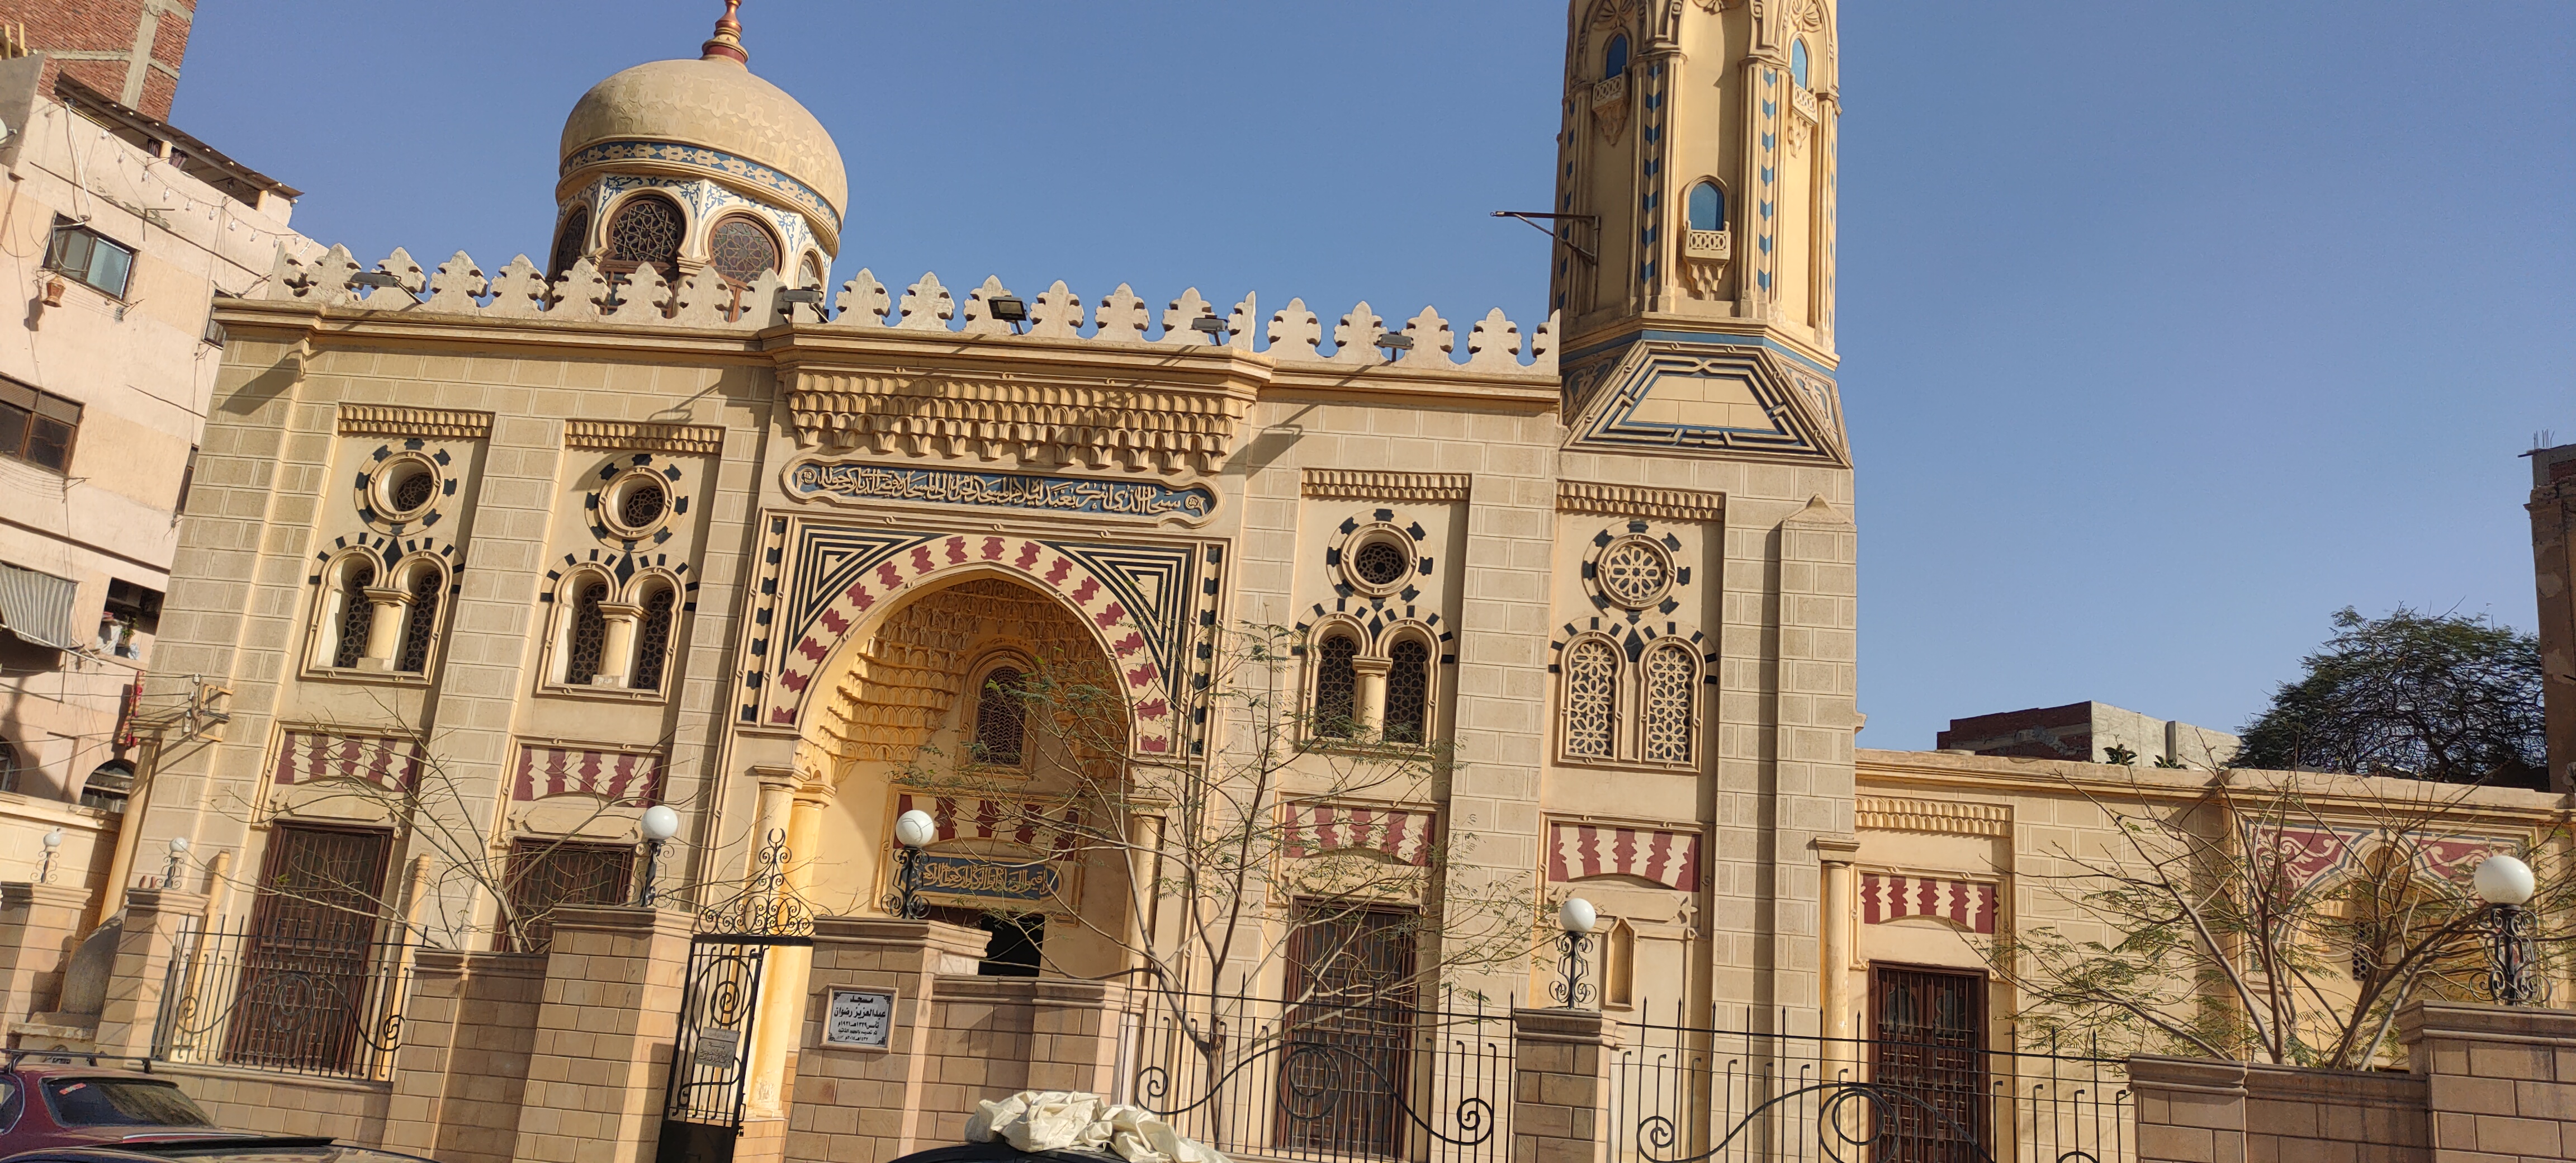 مسجد عبدالعزيز رضوان تحفة معمارية إسلامية (5)